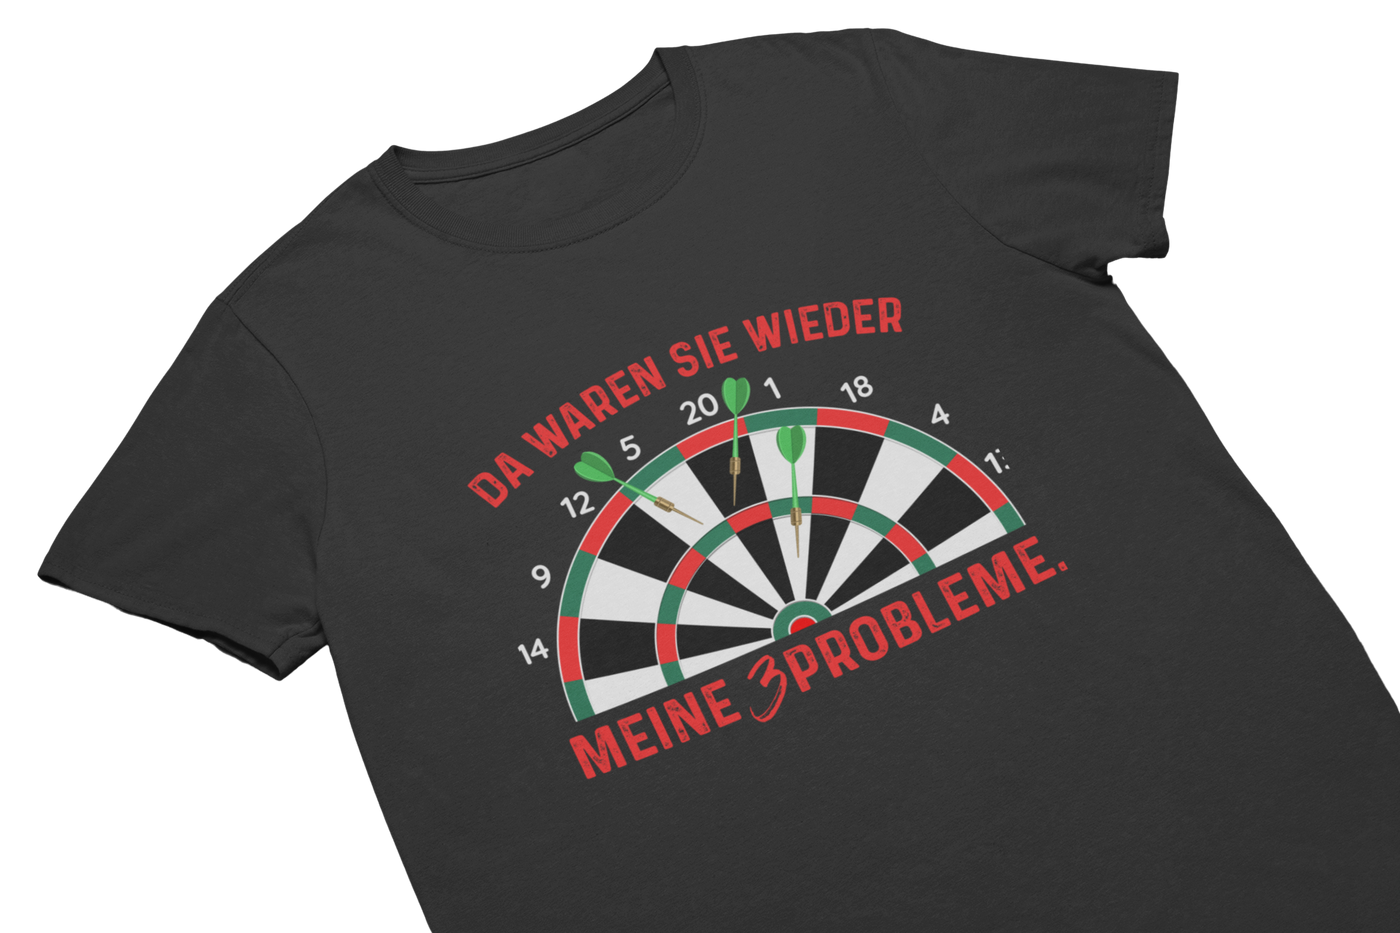 MEINE 3 PROBLEME - T-Shirt Schwarz